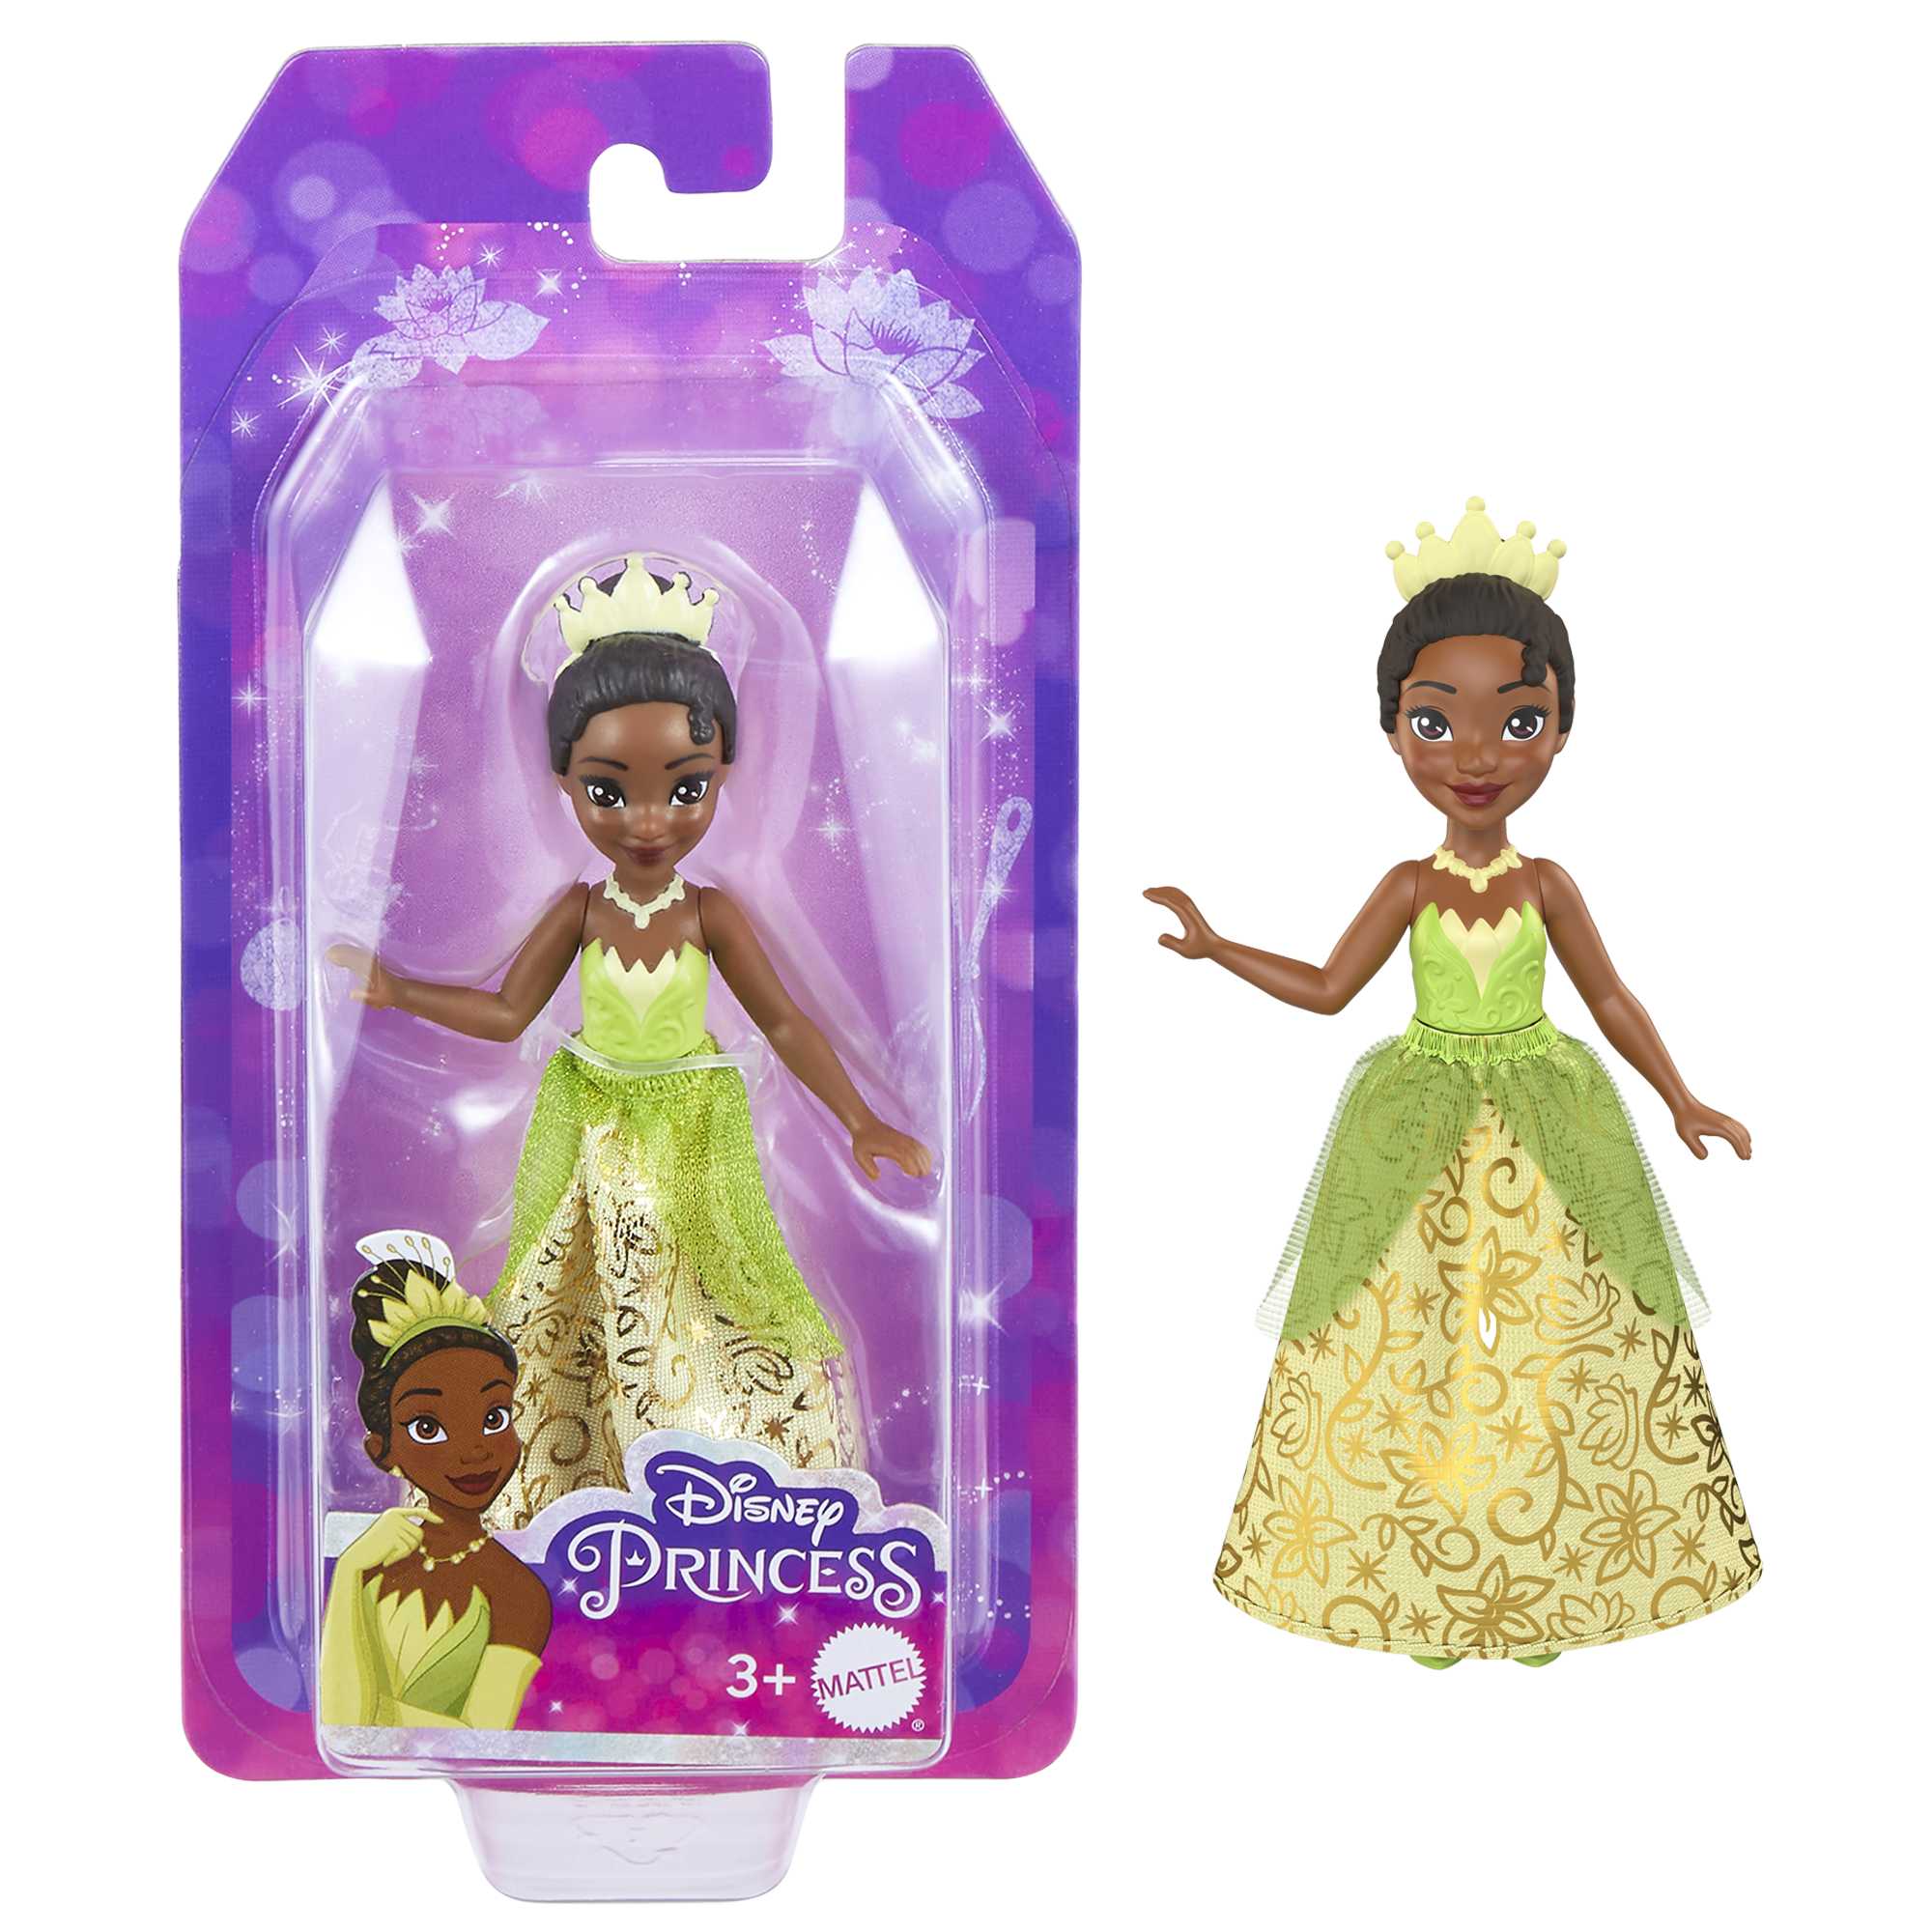 Mini bambole Disney Princess, giocattoli Disney da collezione, HLW69